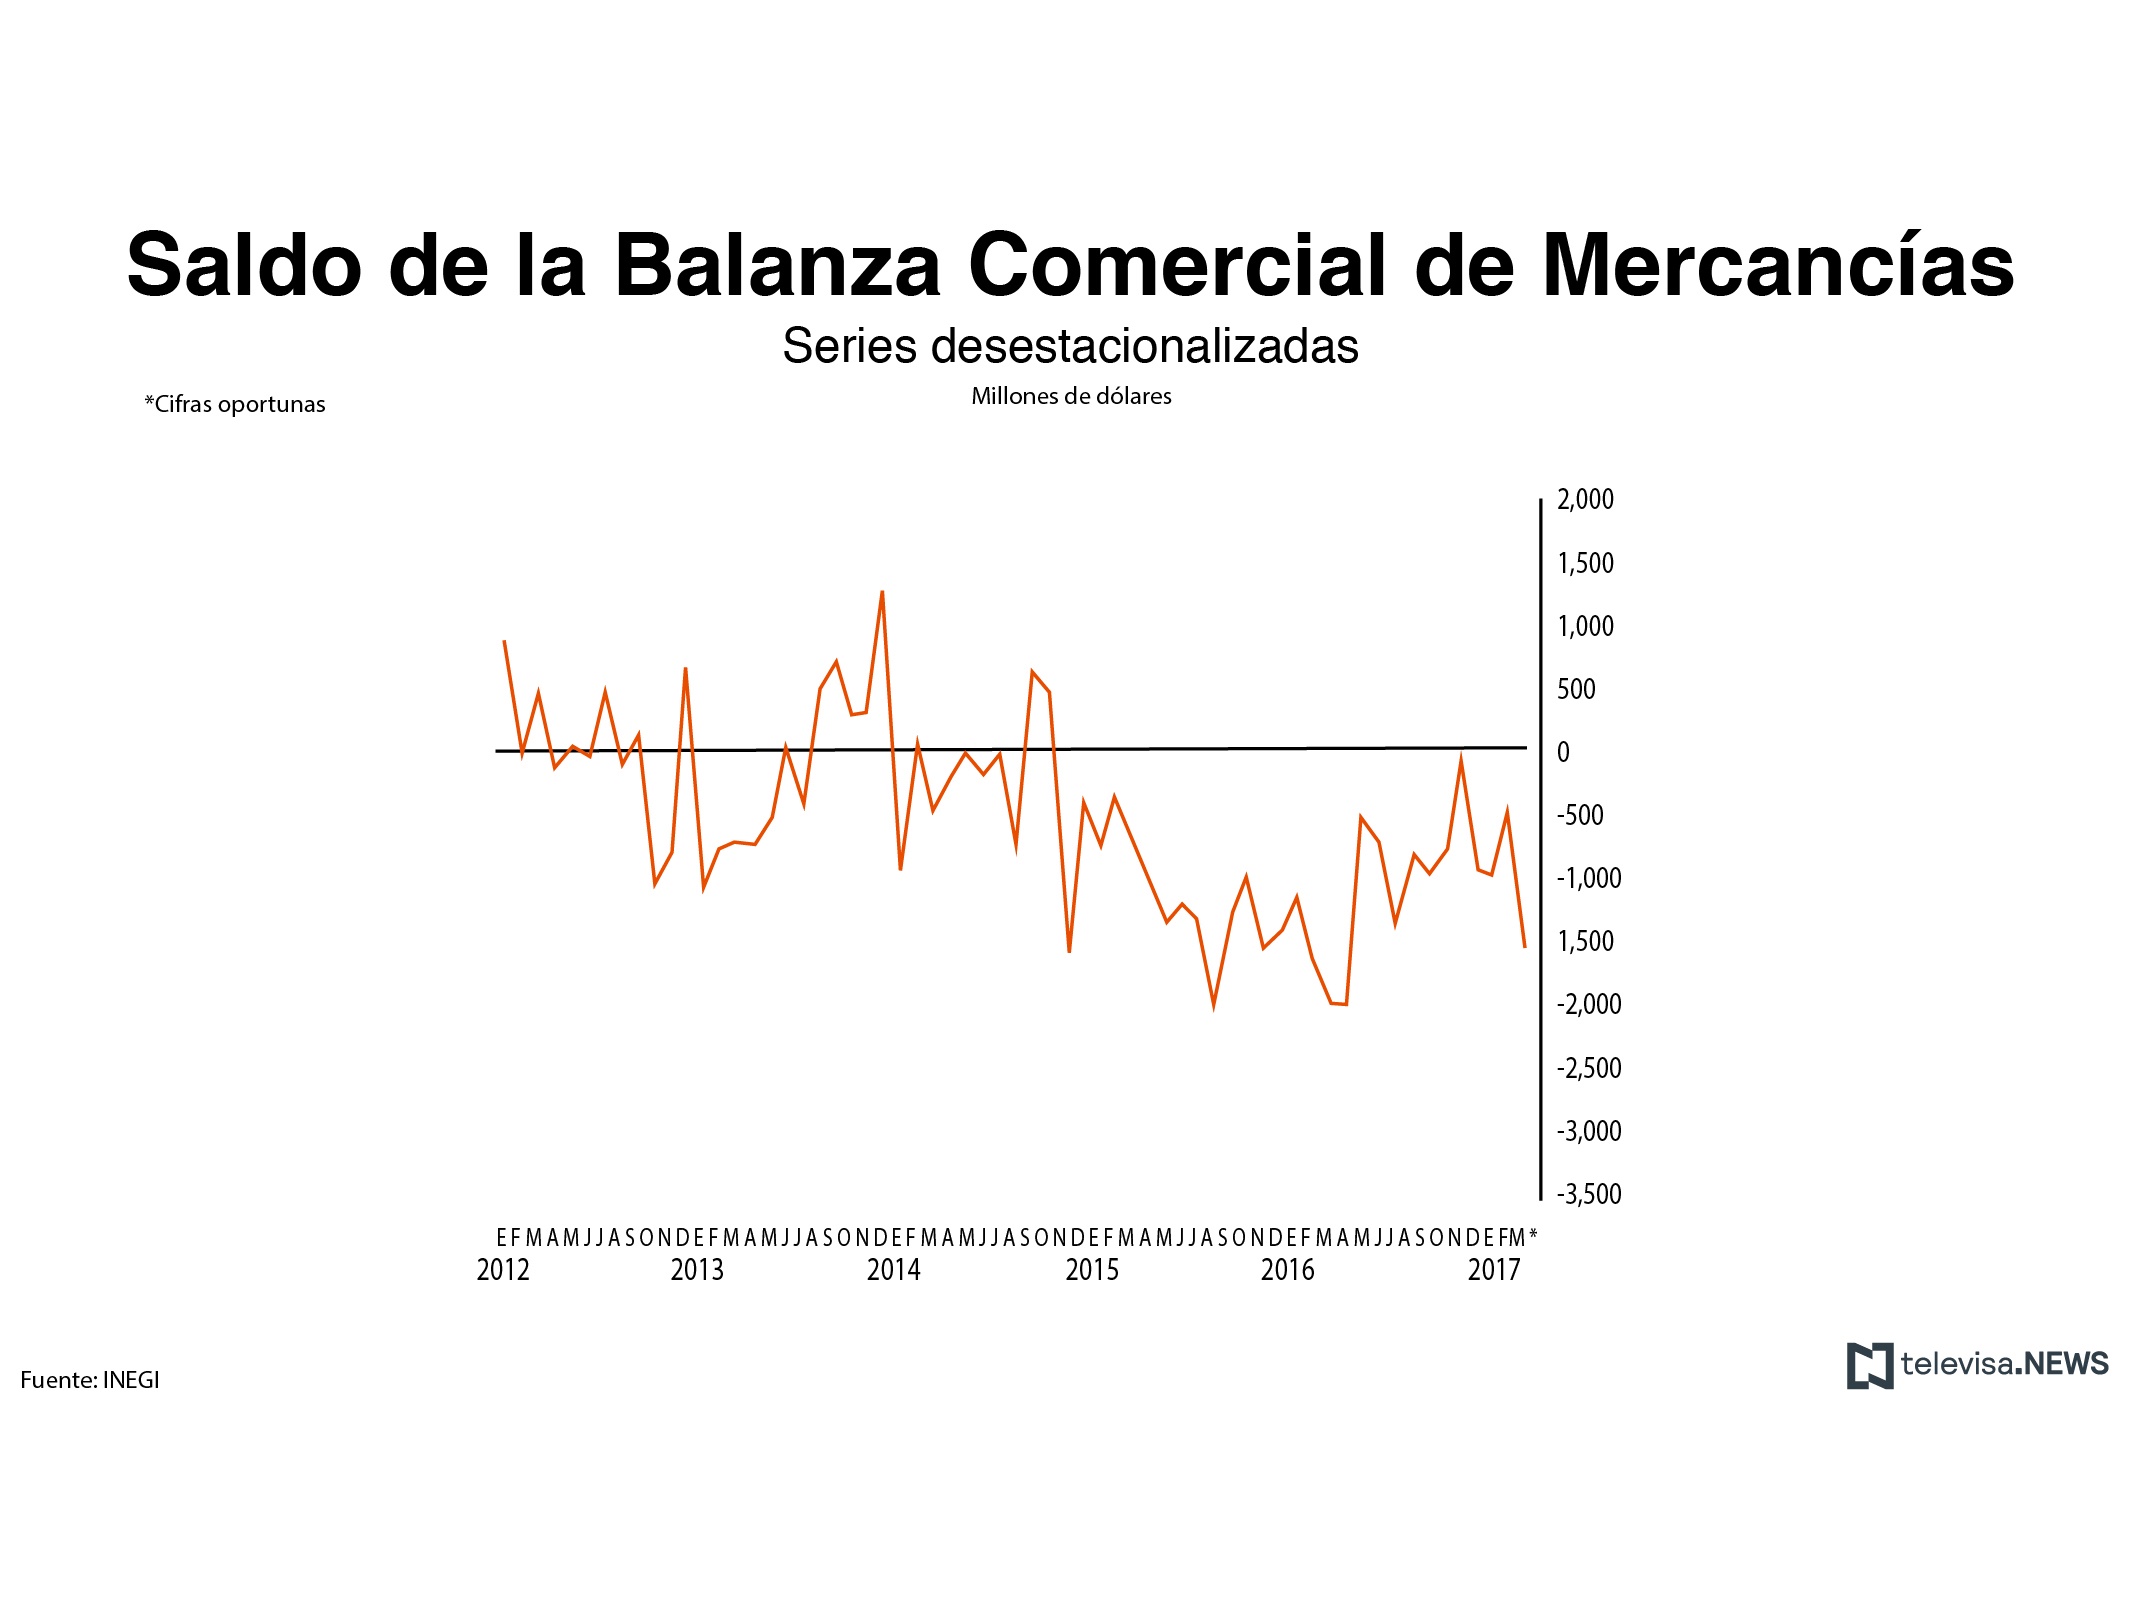 Saldo de balanza comercial de mercancías, según el INEGI. (Noticieros Televisa)